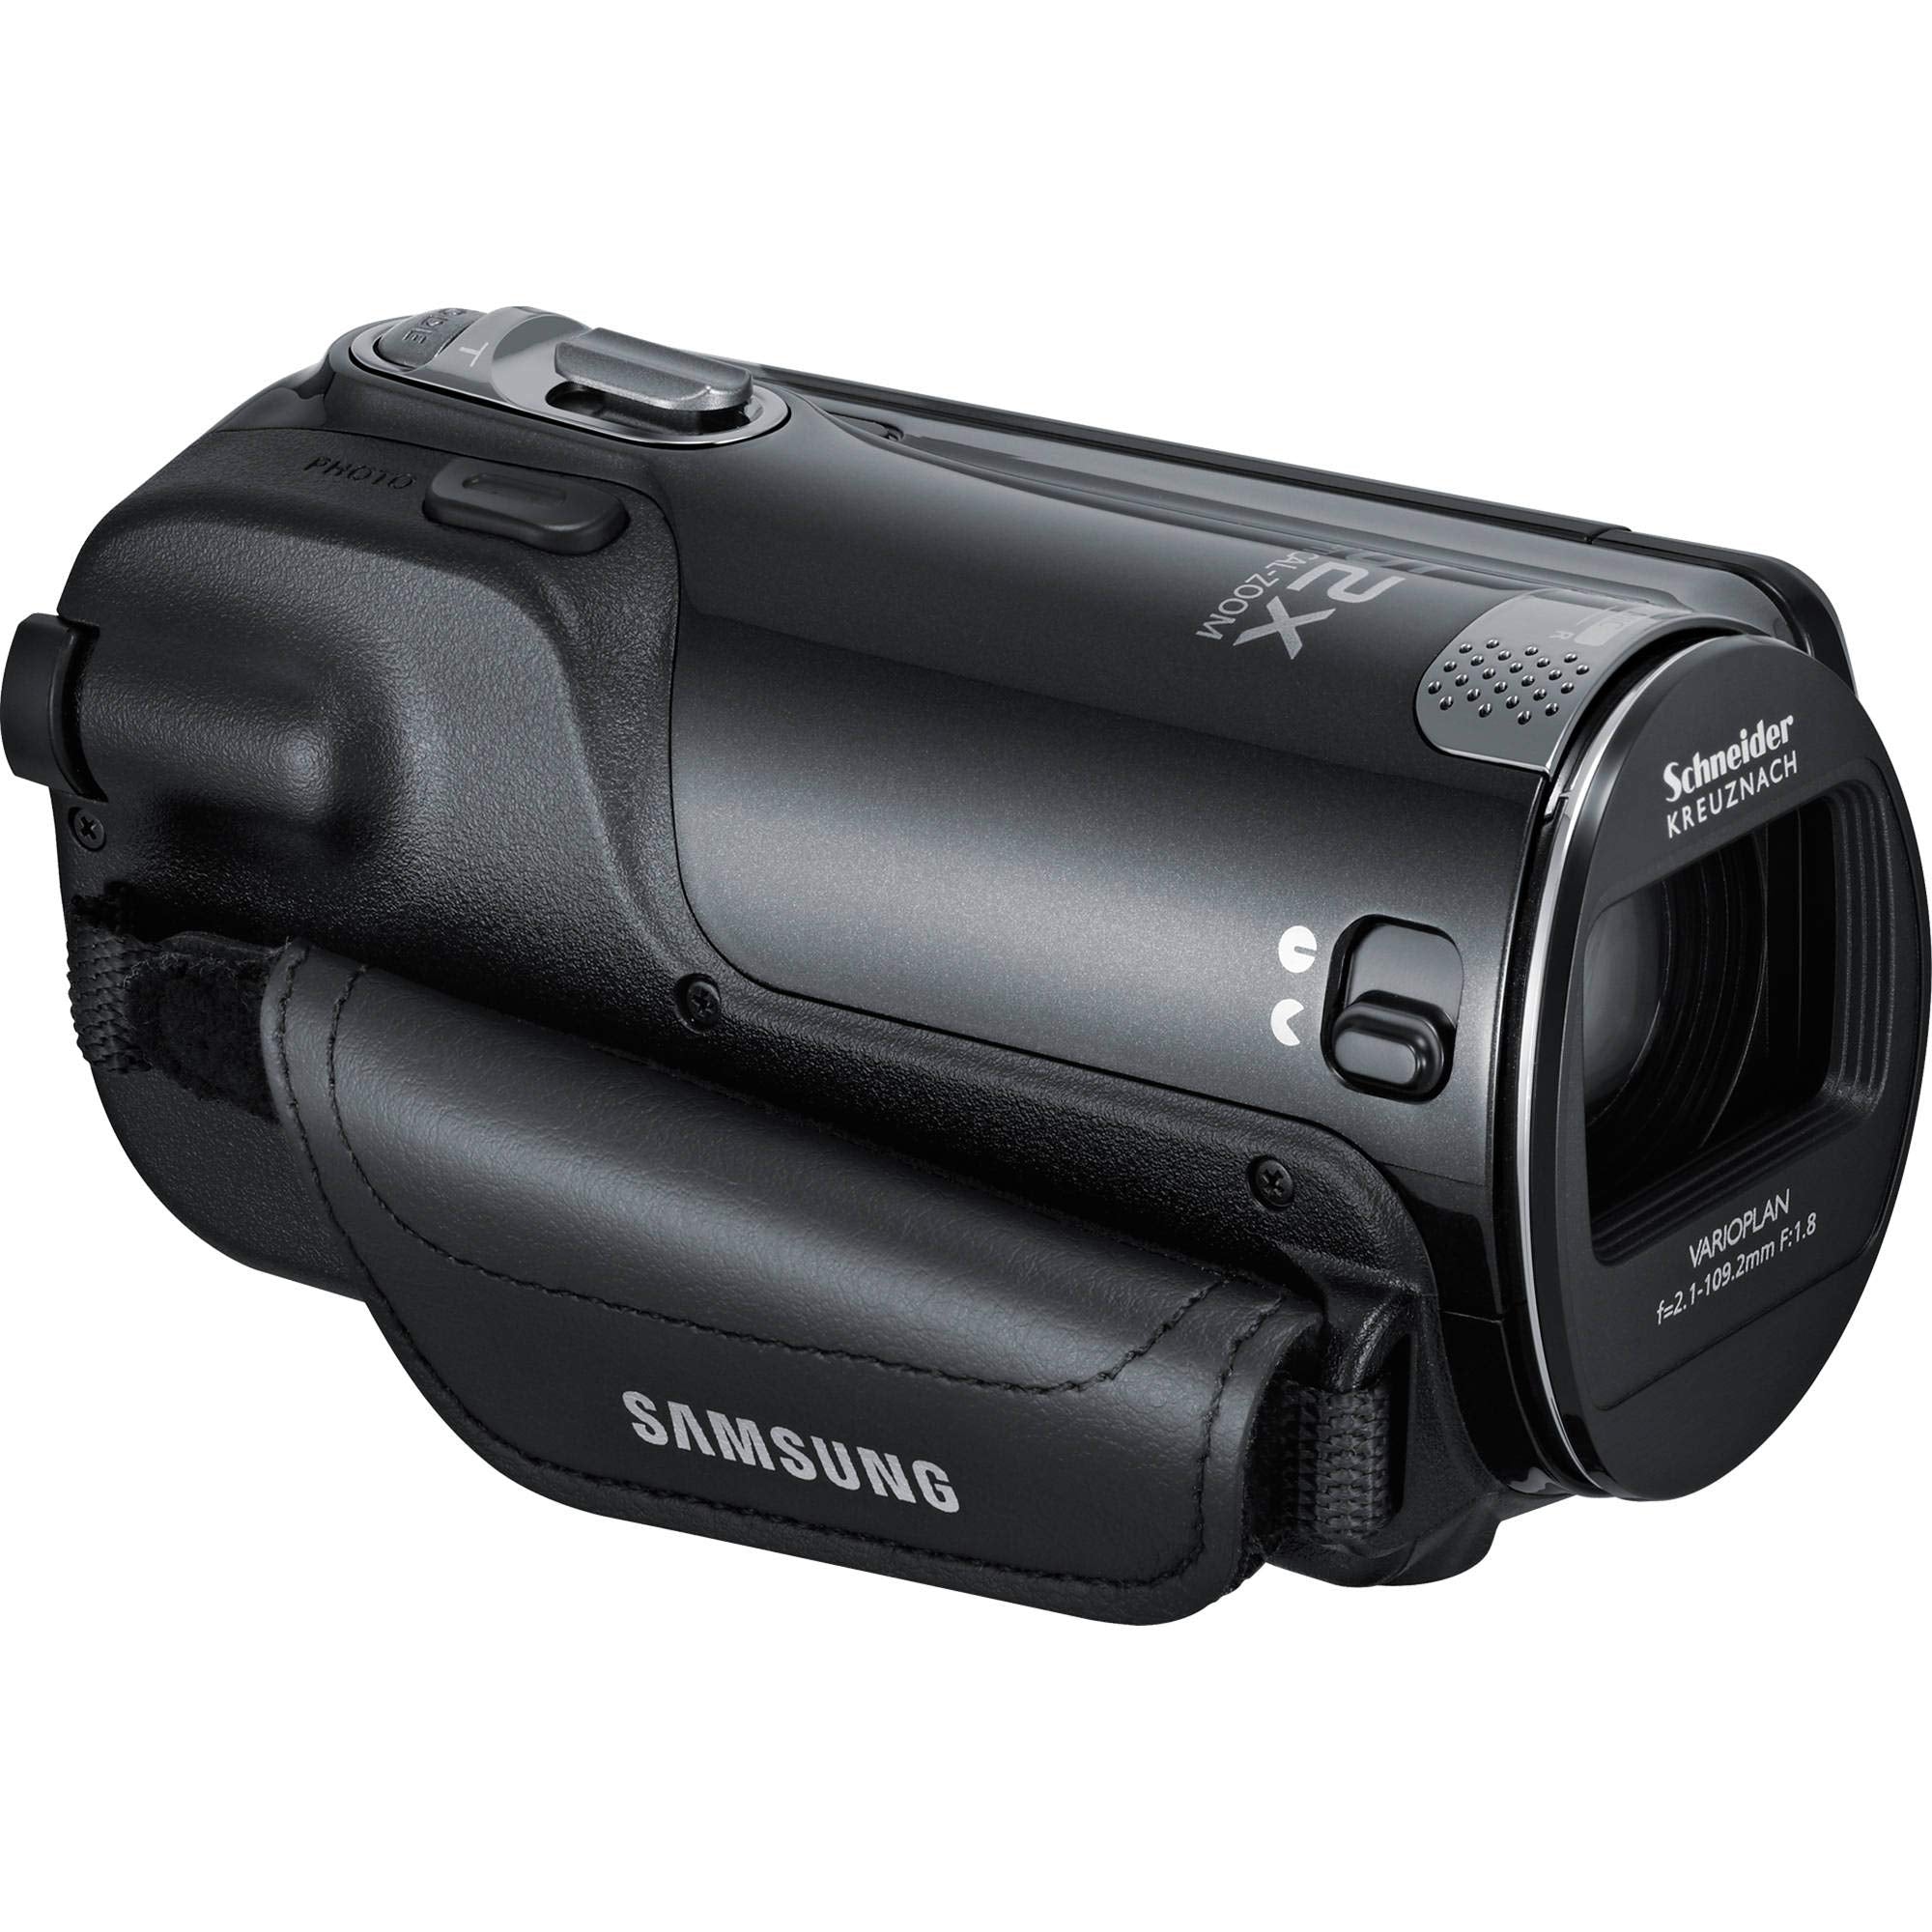 Samsung HMX-F90 Black Camcorder + Rode Microphone + Hands-Free Shoulder Mount Stabilizer + Stabilizing Handle/Video Grip Tripod Bundle